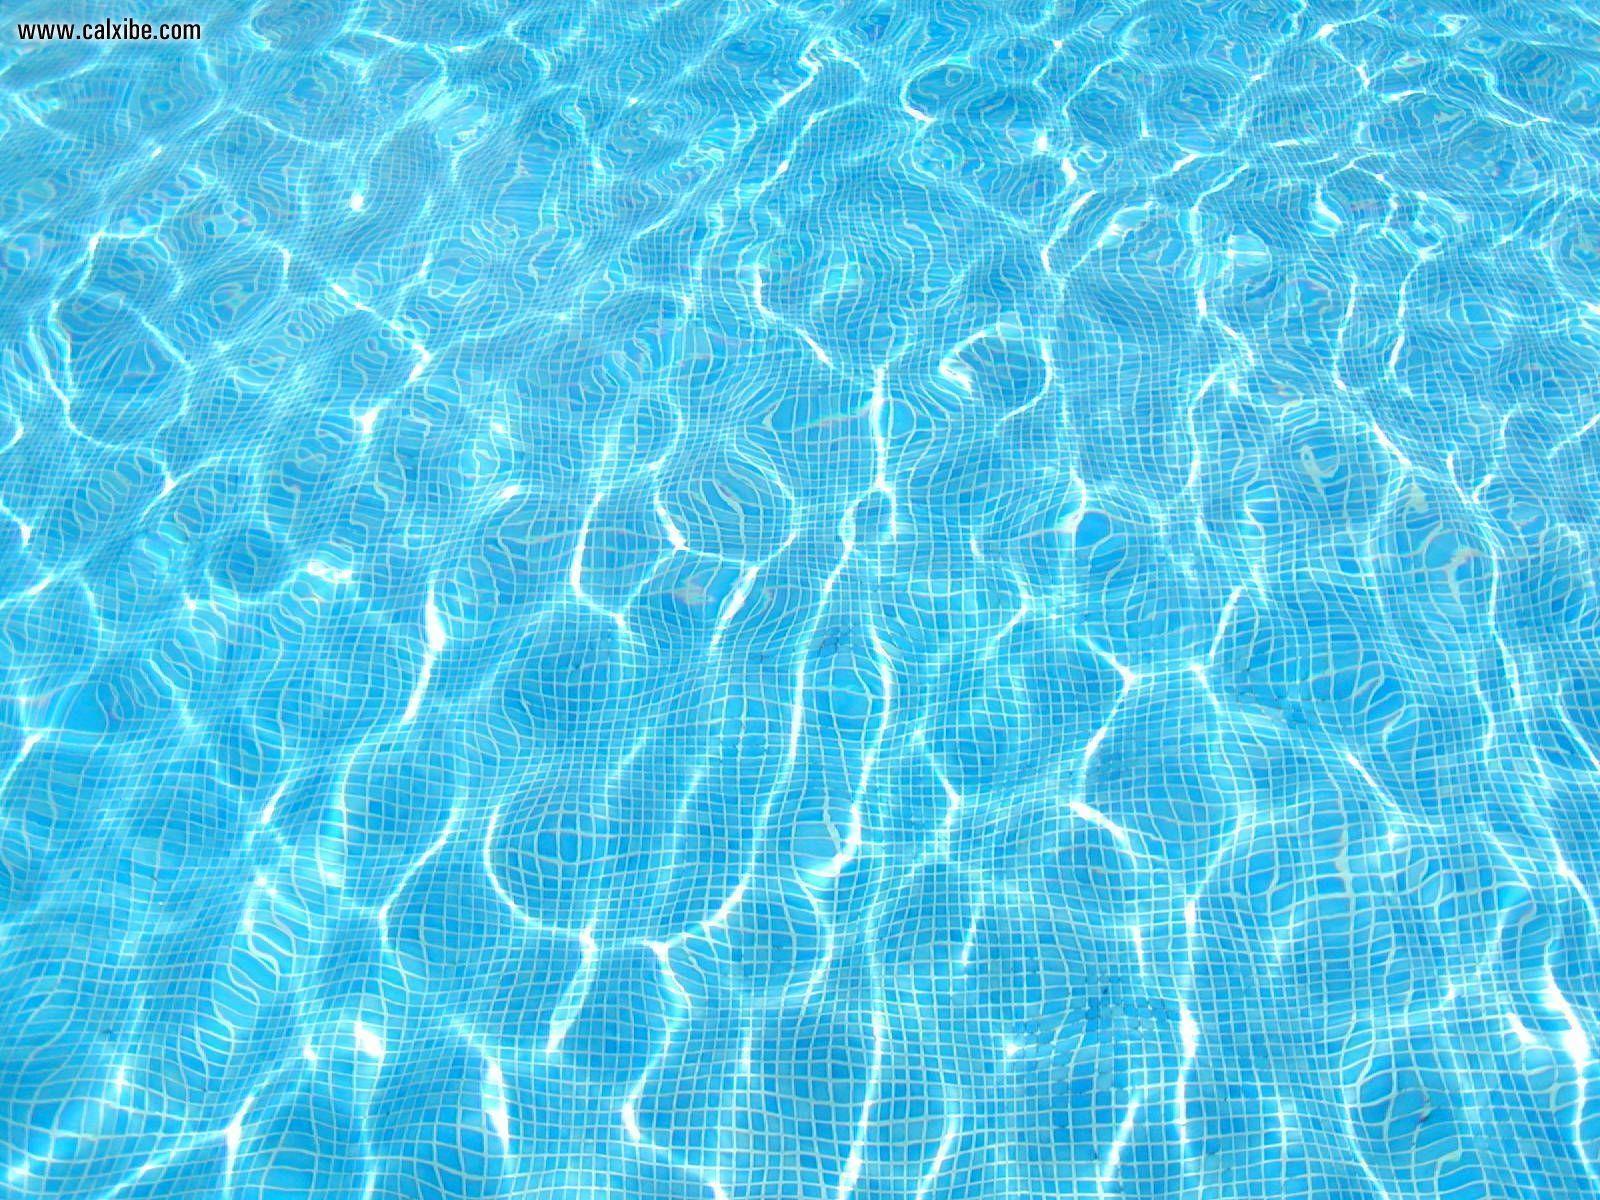 Swimming Pool Wallpaper